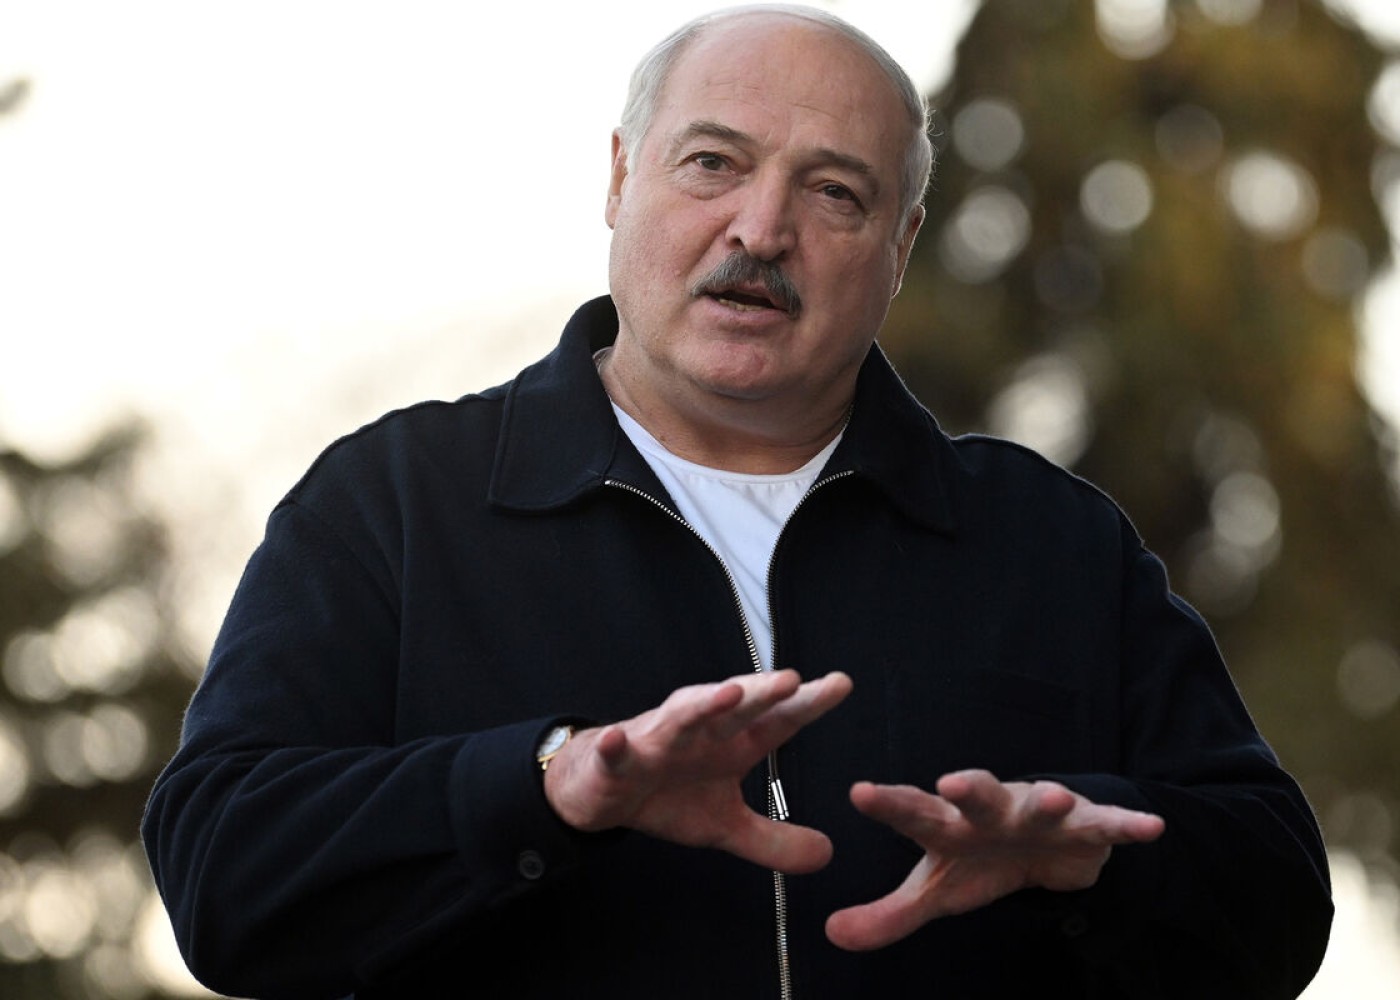 "Dollar və avro lazımsız valyutalardır" - Lukaşenko